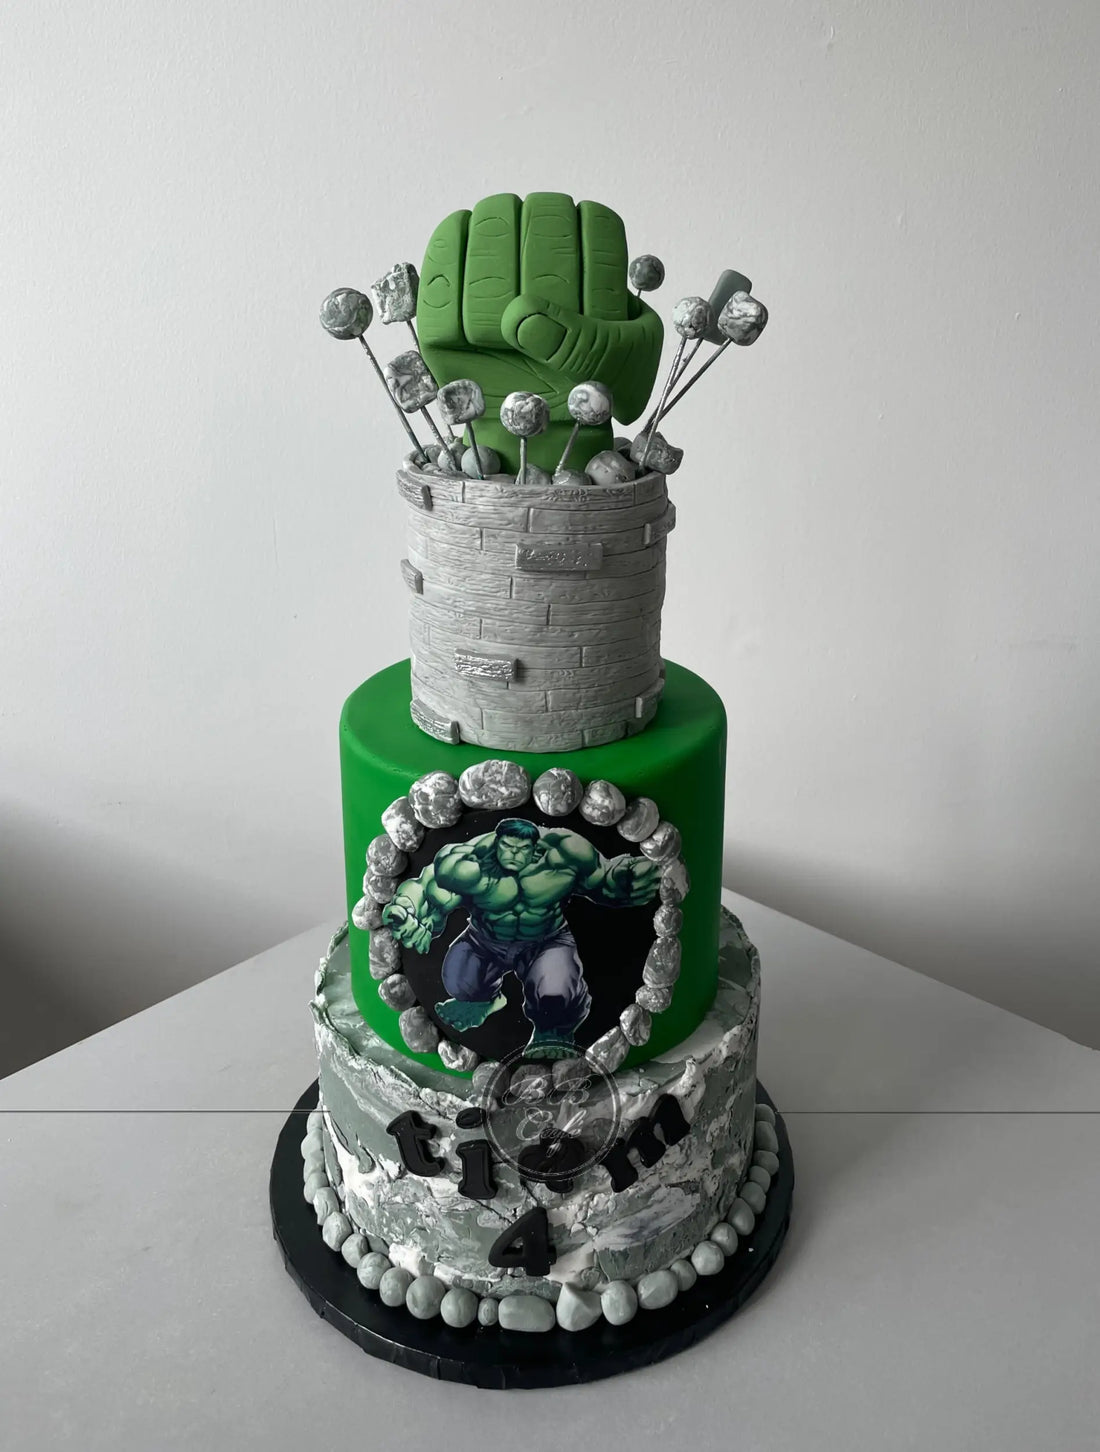 Big hulk in fondant - custom cake